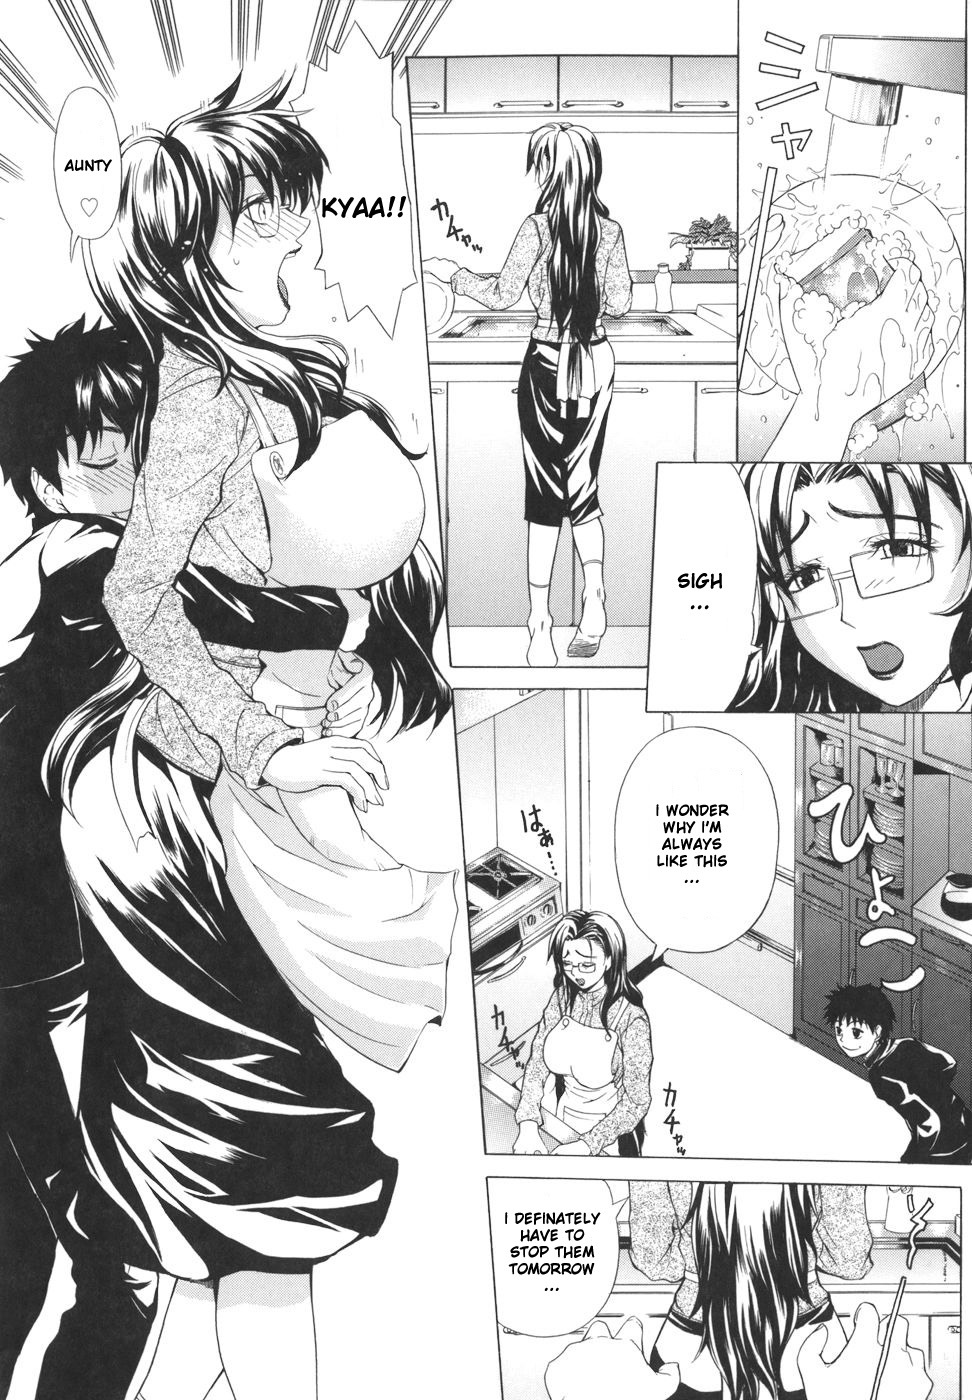 Pearl Rose 9 hentai manga